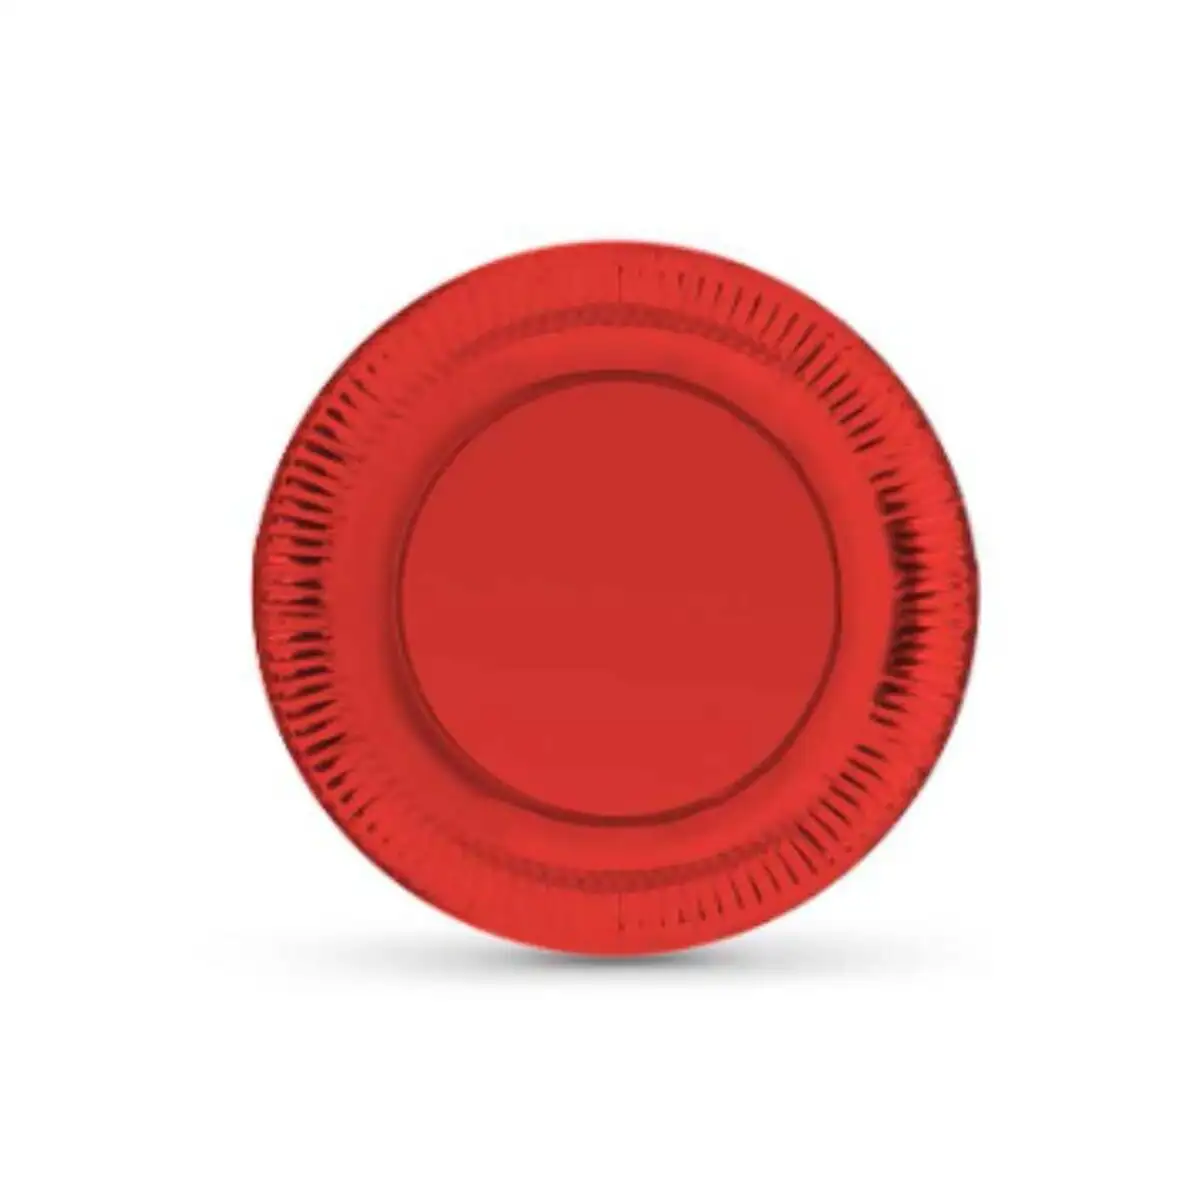 Service de vaisselle algon rond carton produits a usage unique 18 x 18 x 1 5 cm rouge 12 unites_1091. DIAYTAR SENEGAL - L'Art de Vivre l'Élégance Accessible. Parcourez notre gamme variée et choisissez des produits qui ajoutent une touche de sophistication à votre style.